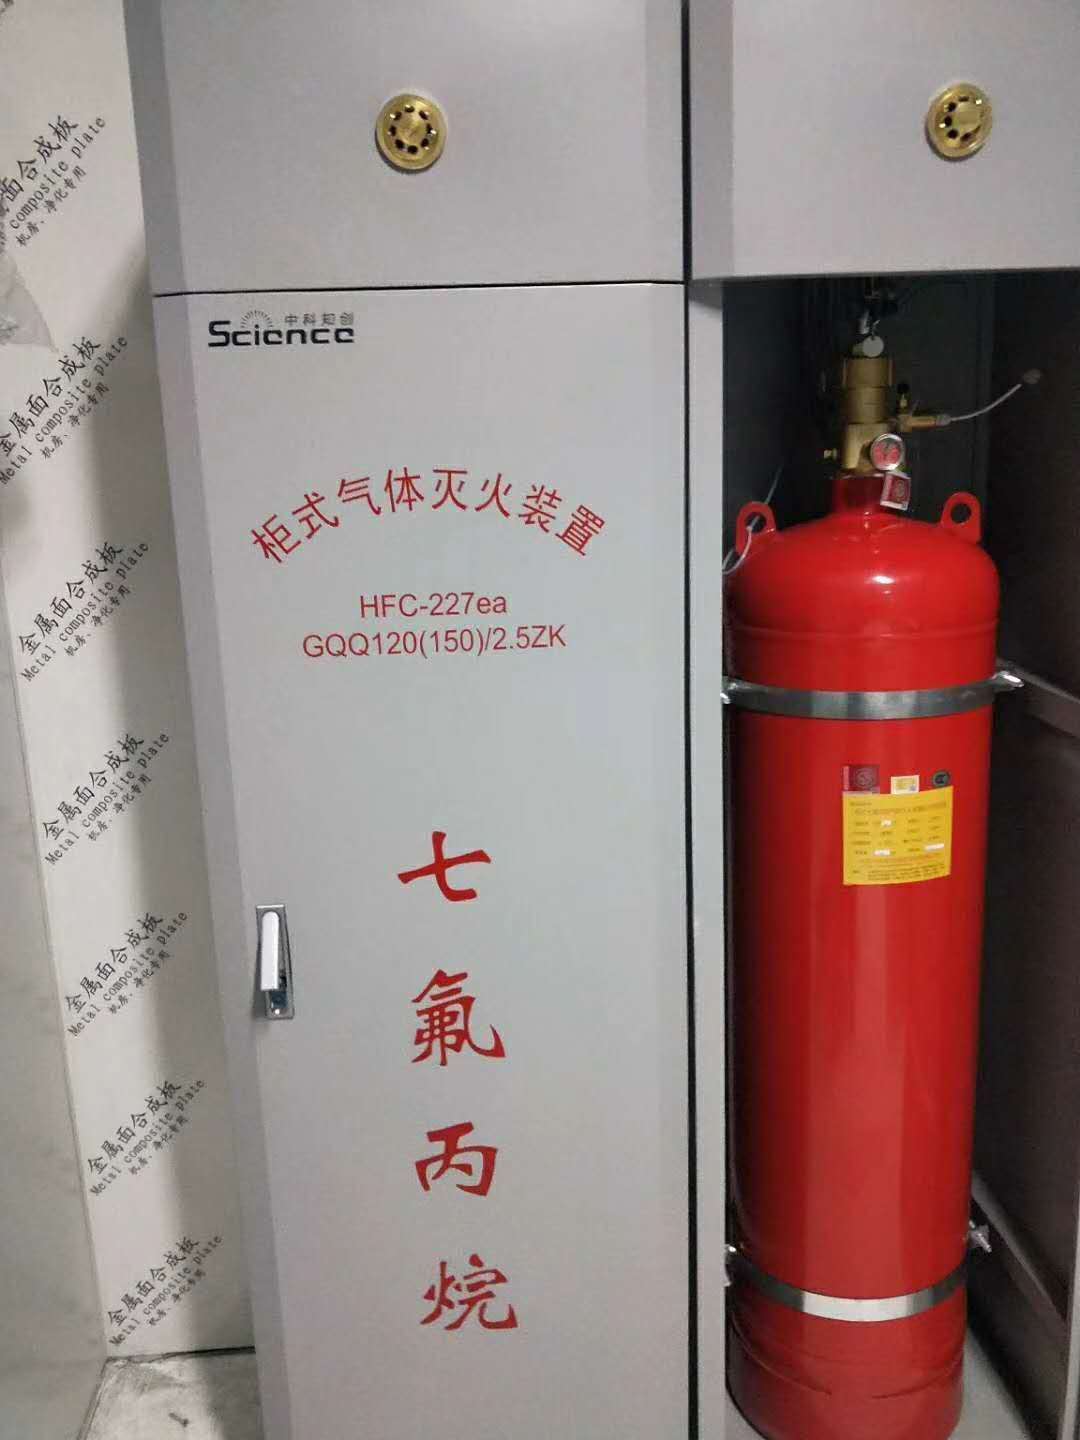 柜式七氟丙烷灭火装置